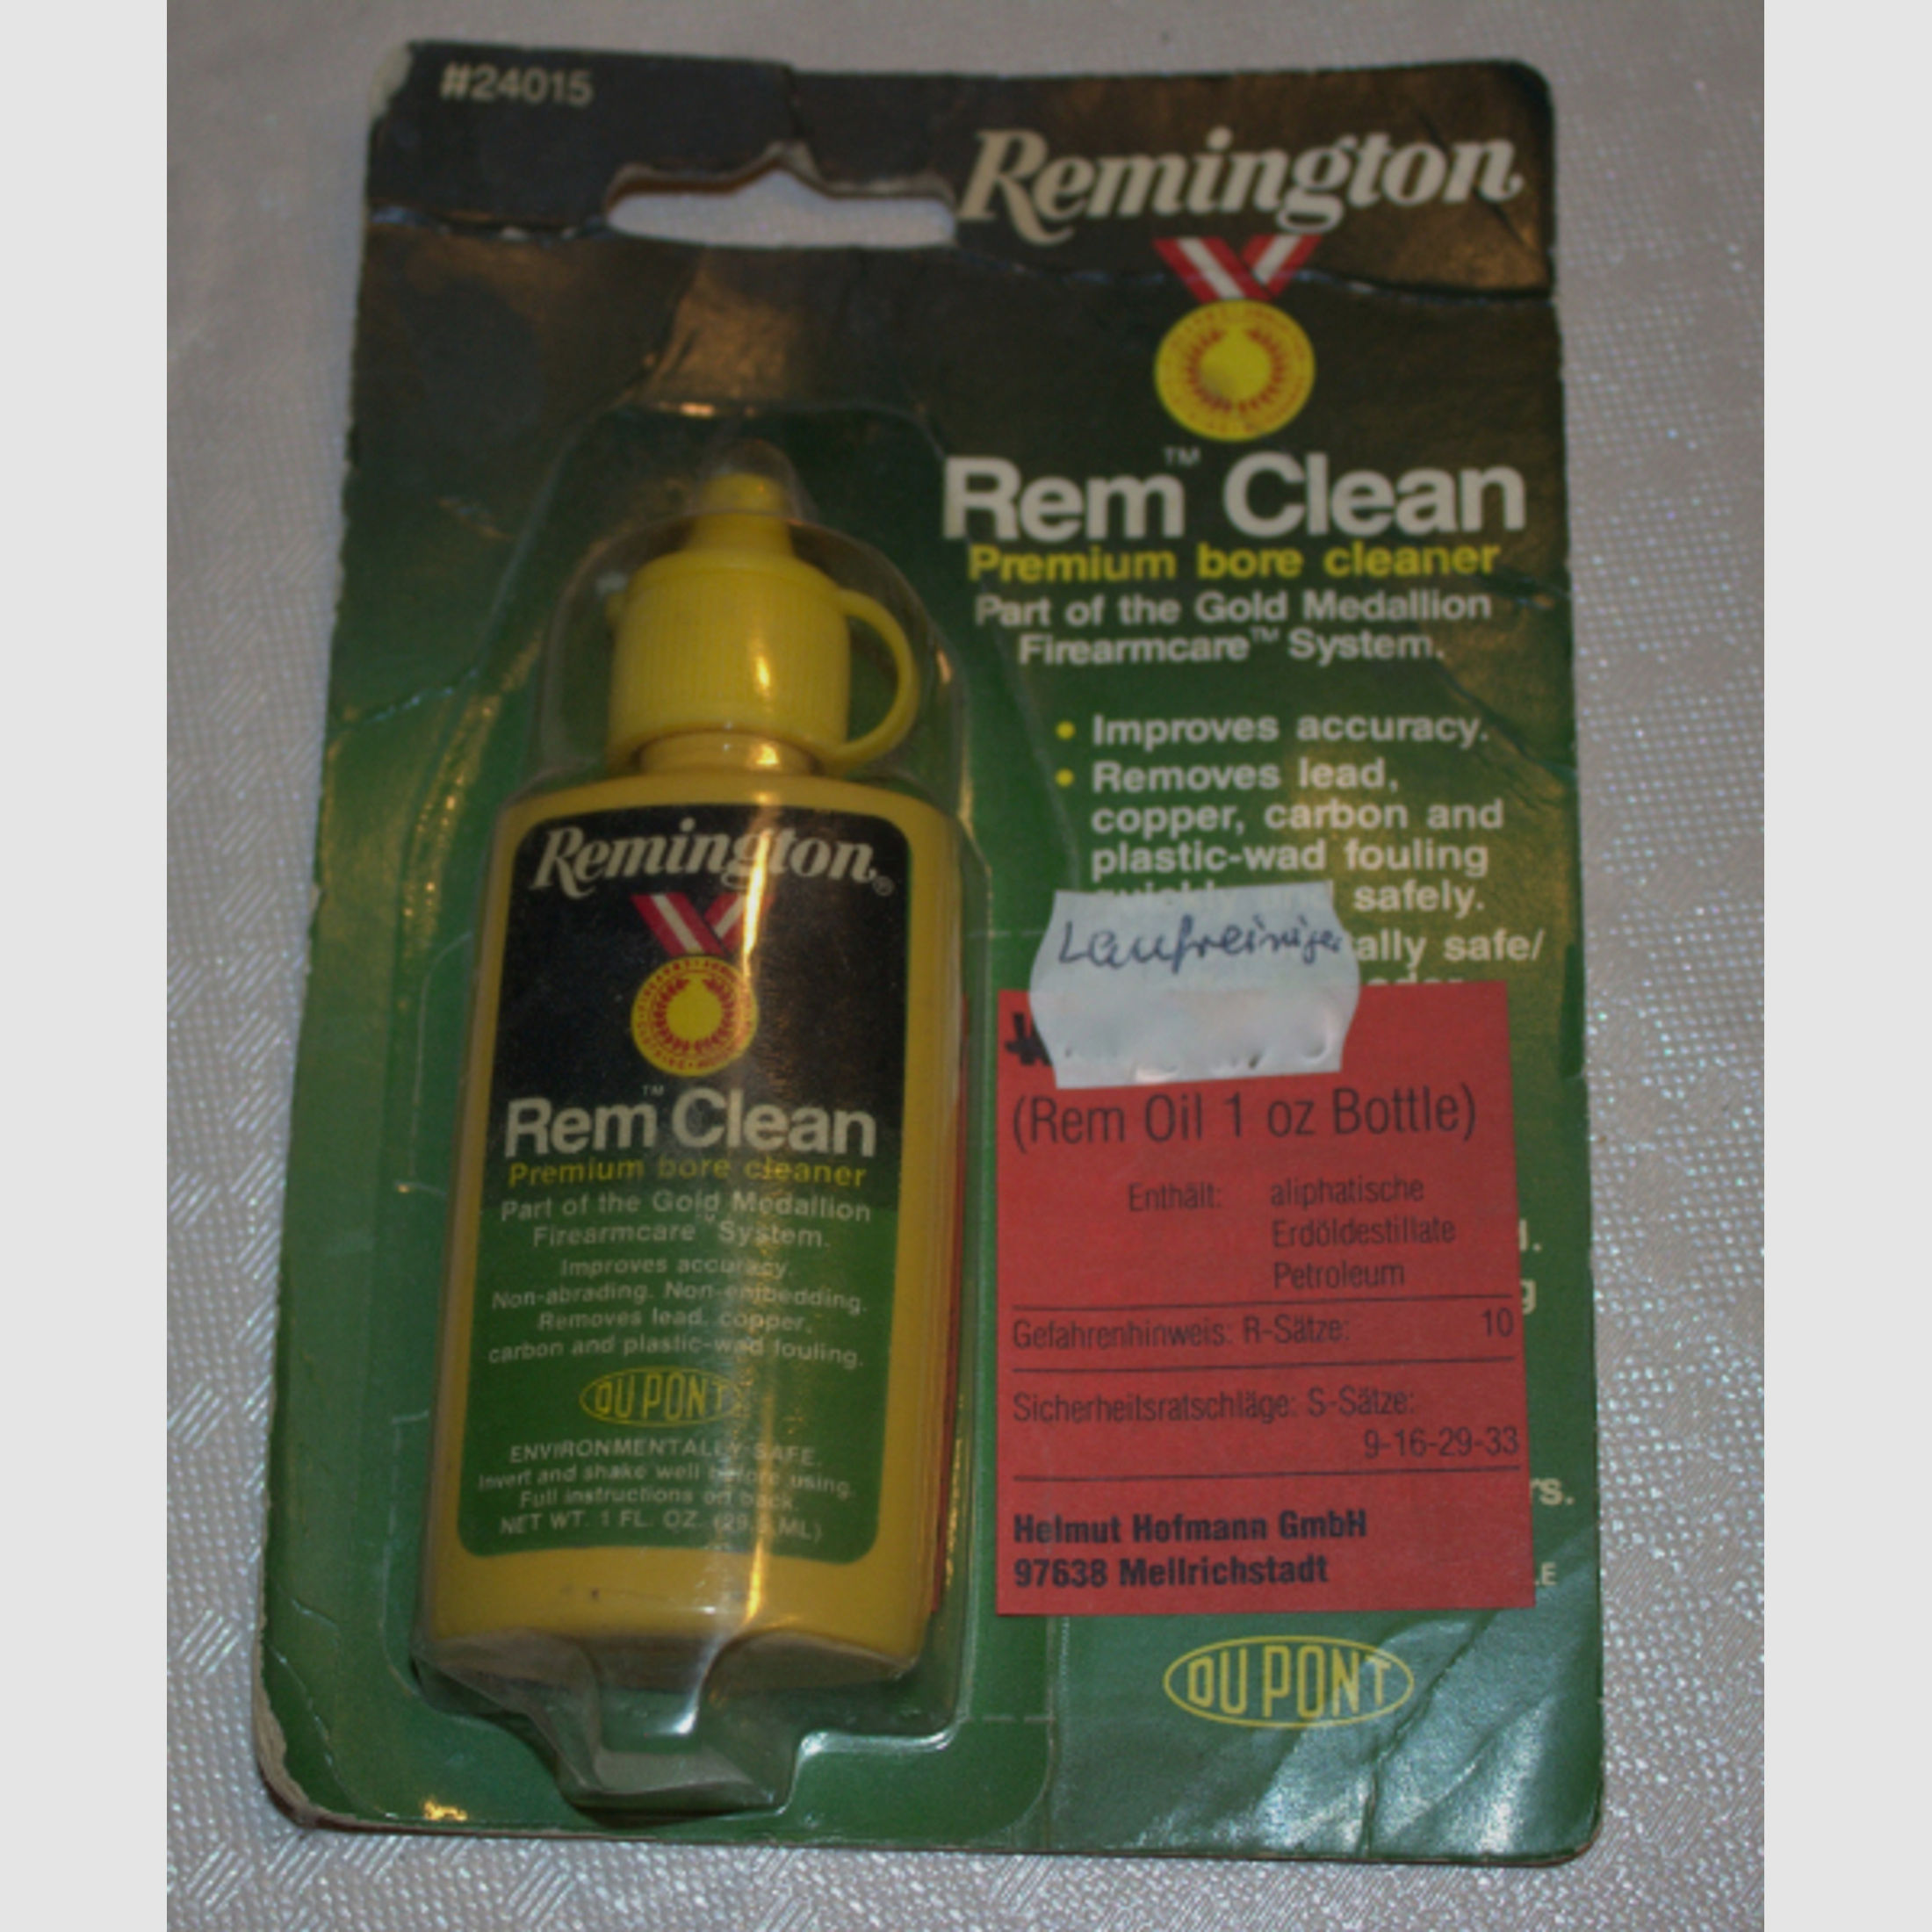 Rem Clean #24015 Laufreiniger